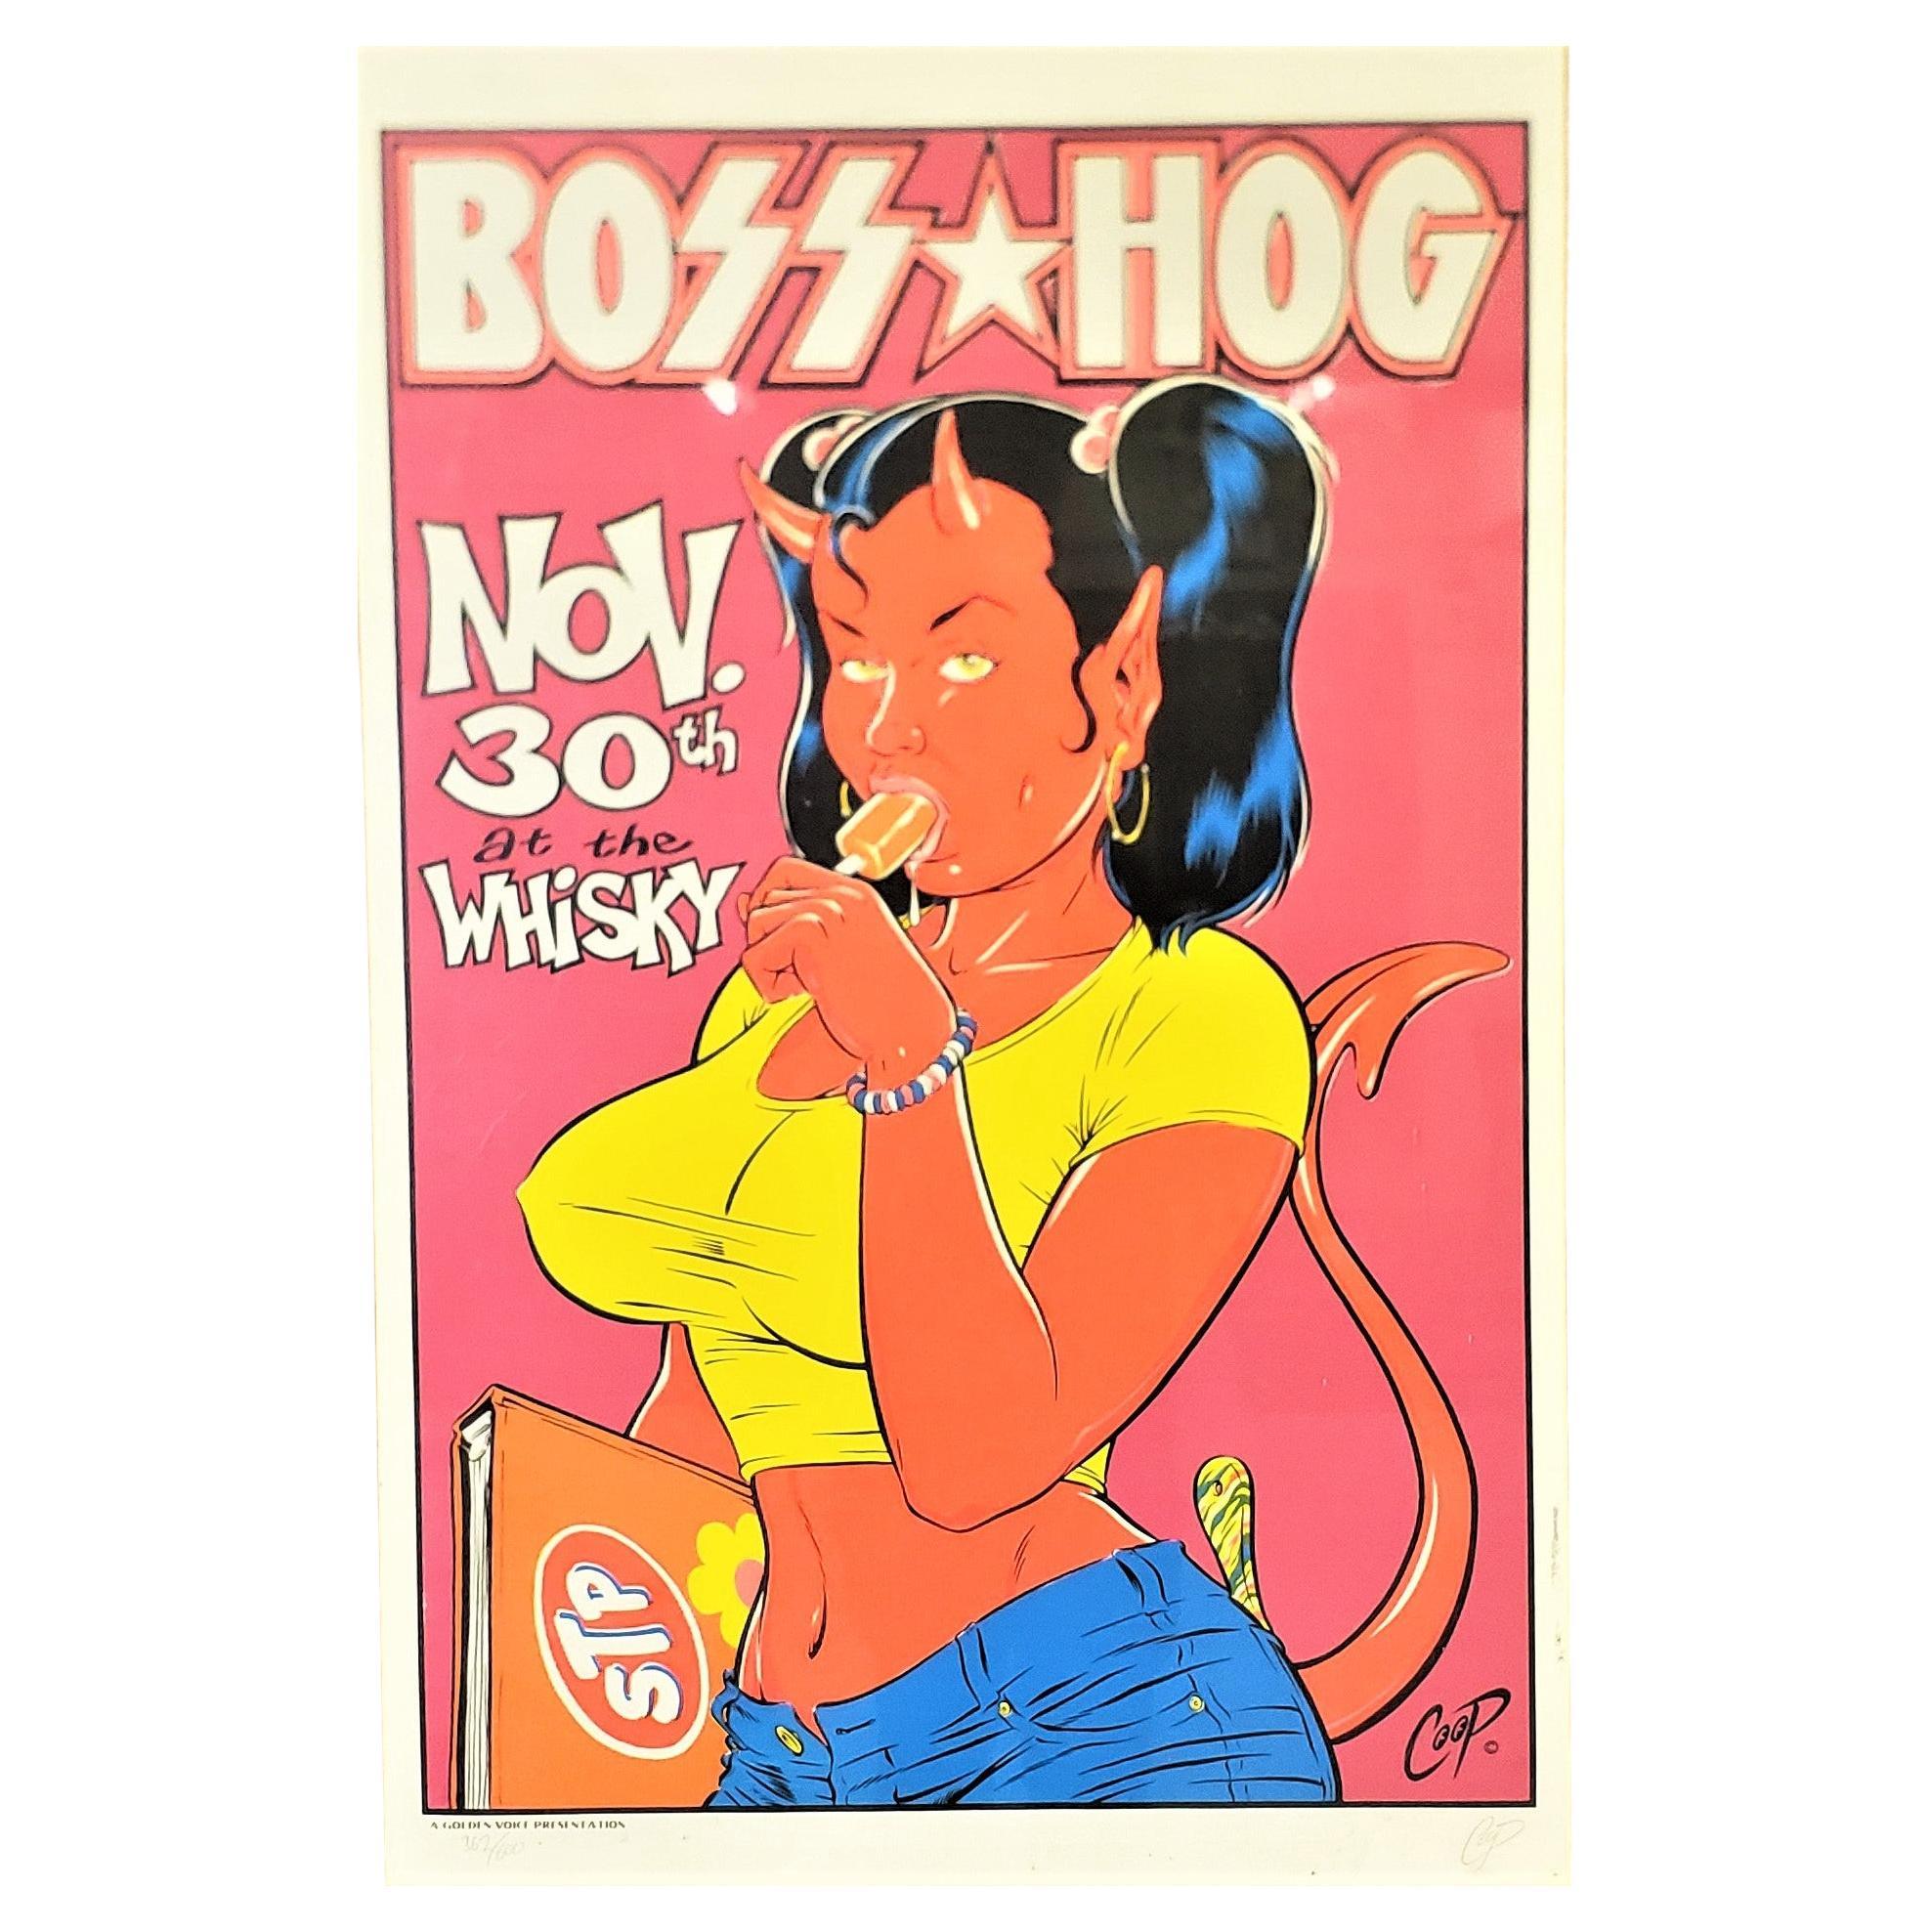 Vintage Boss Hog Limited Edition Signed Coop Concert Poster #362/600 For Sale